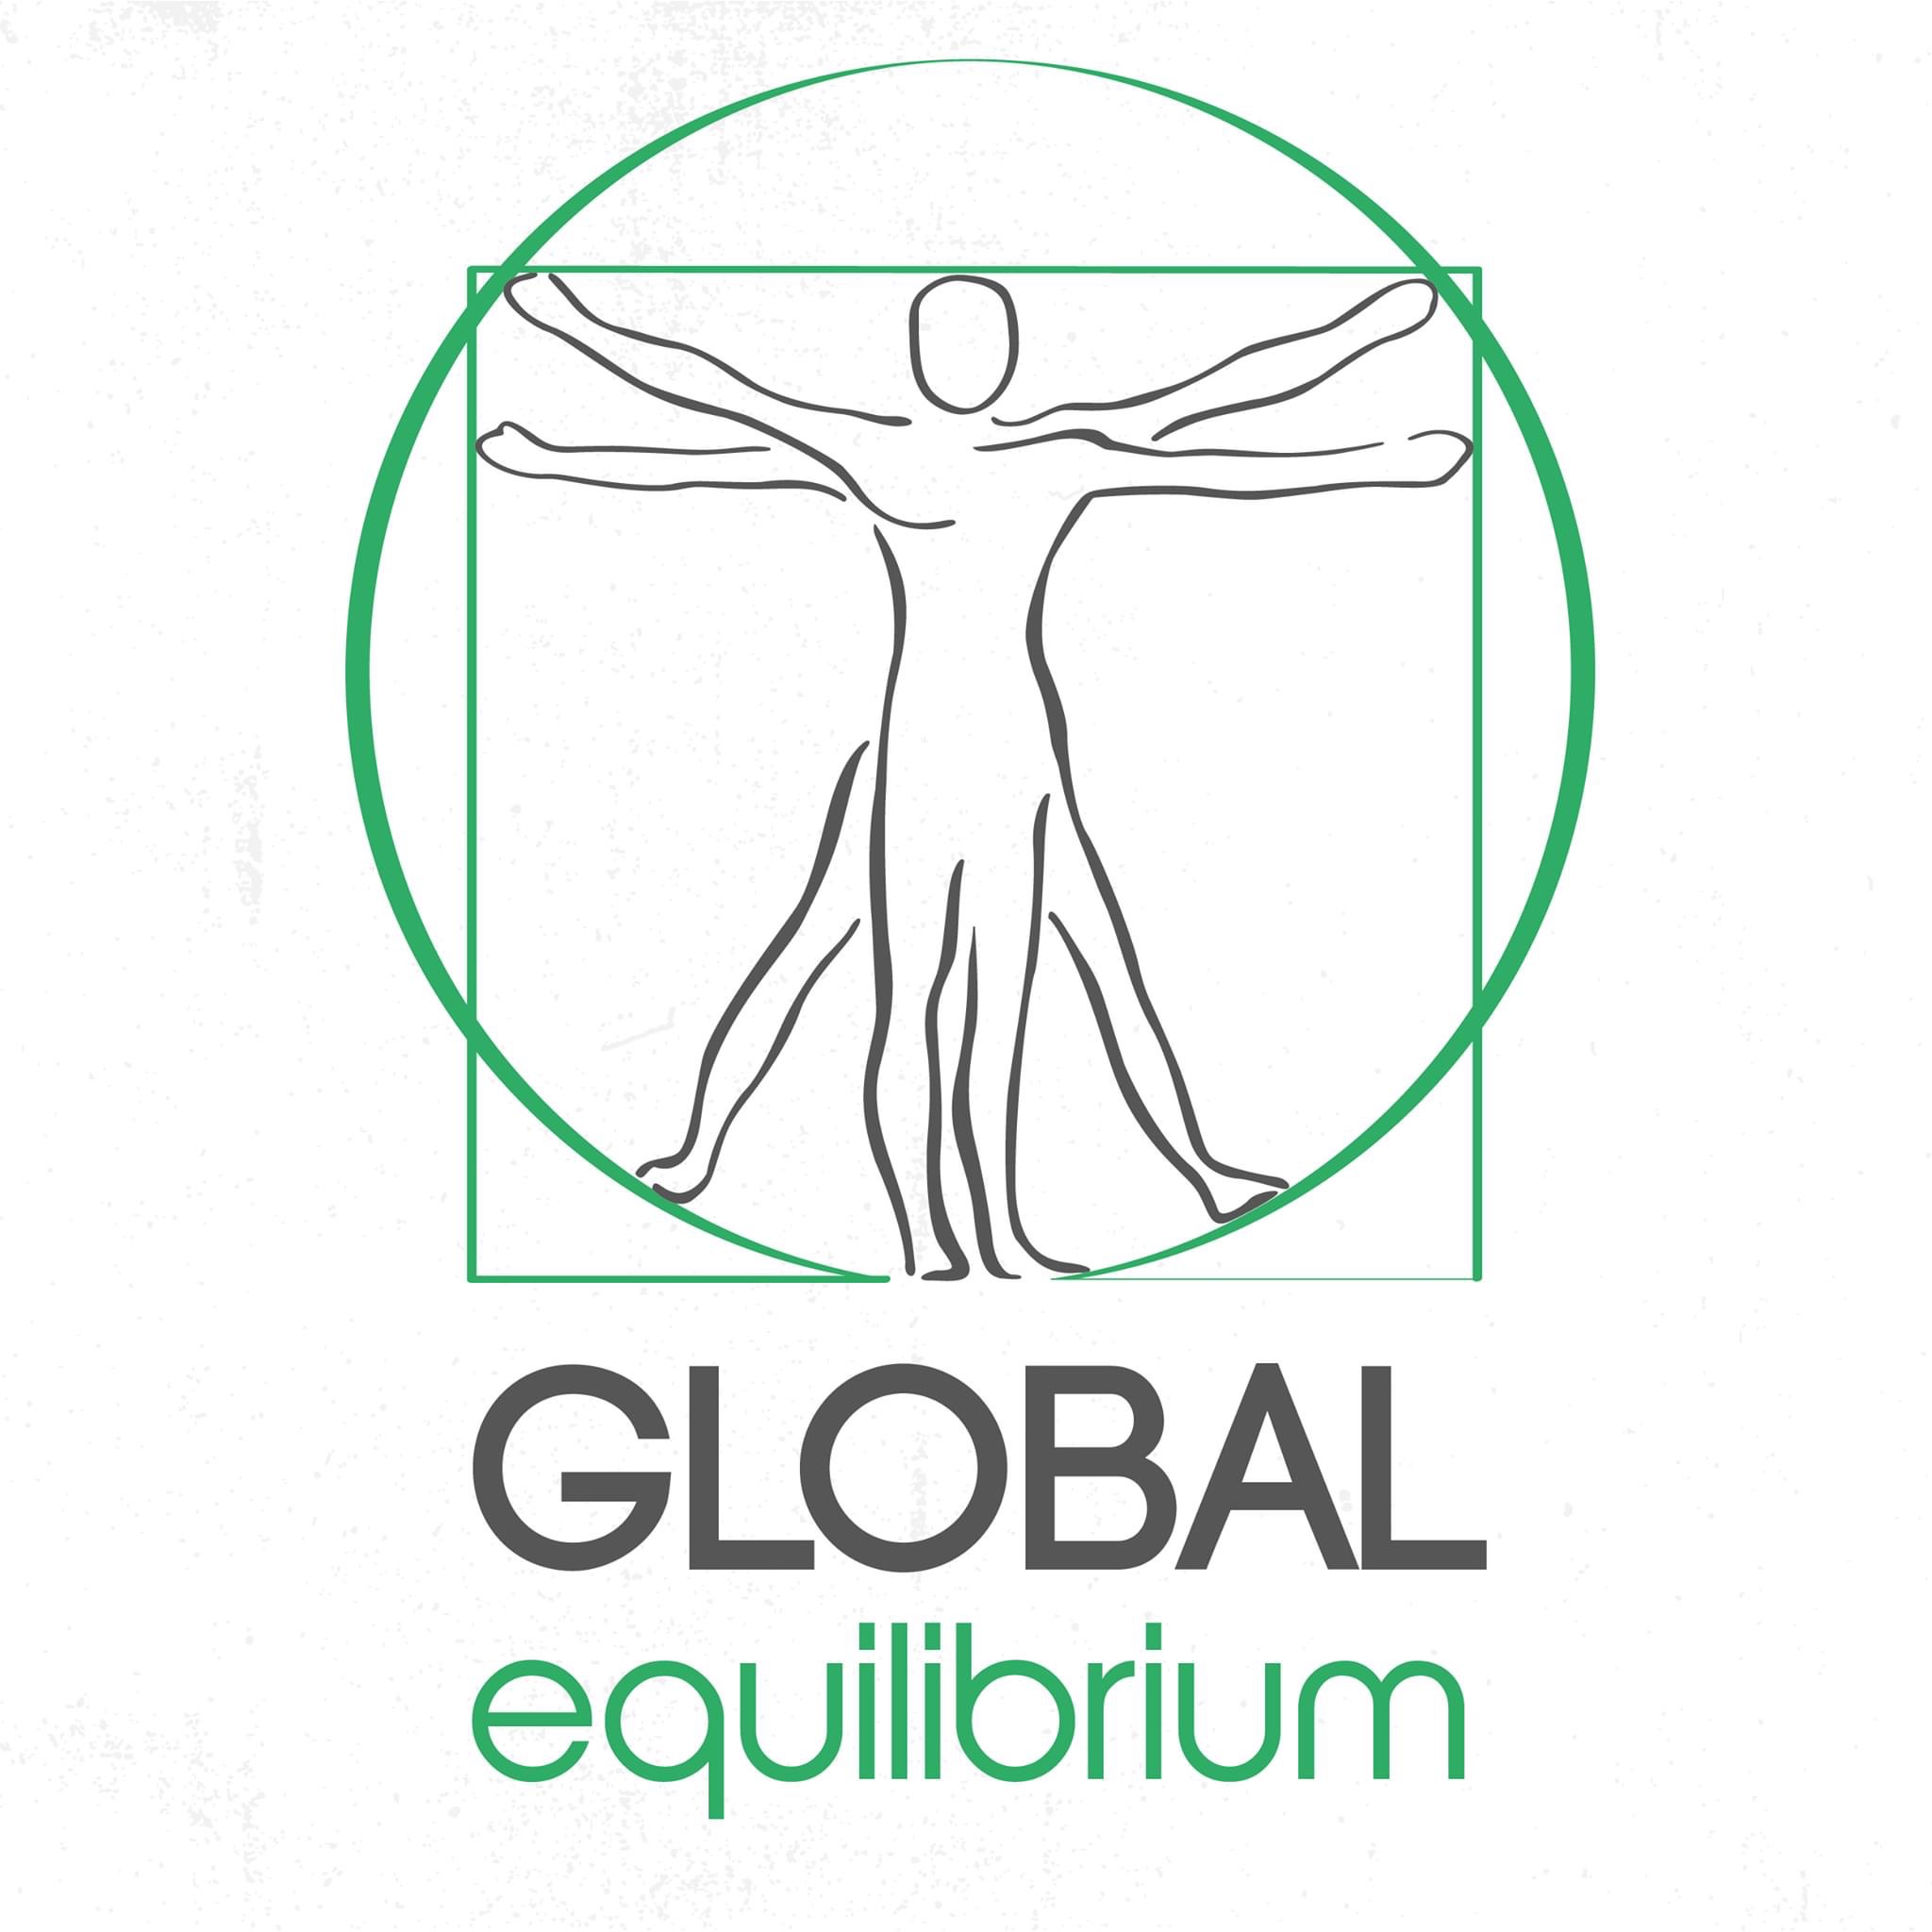 Global Equilibrium